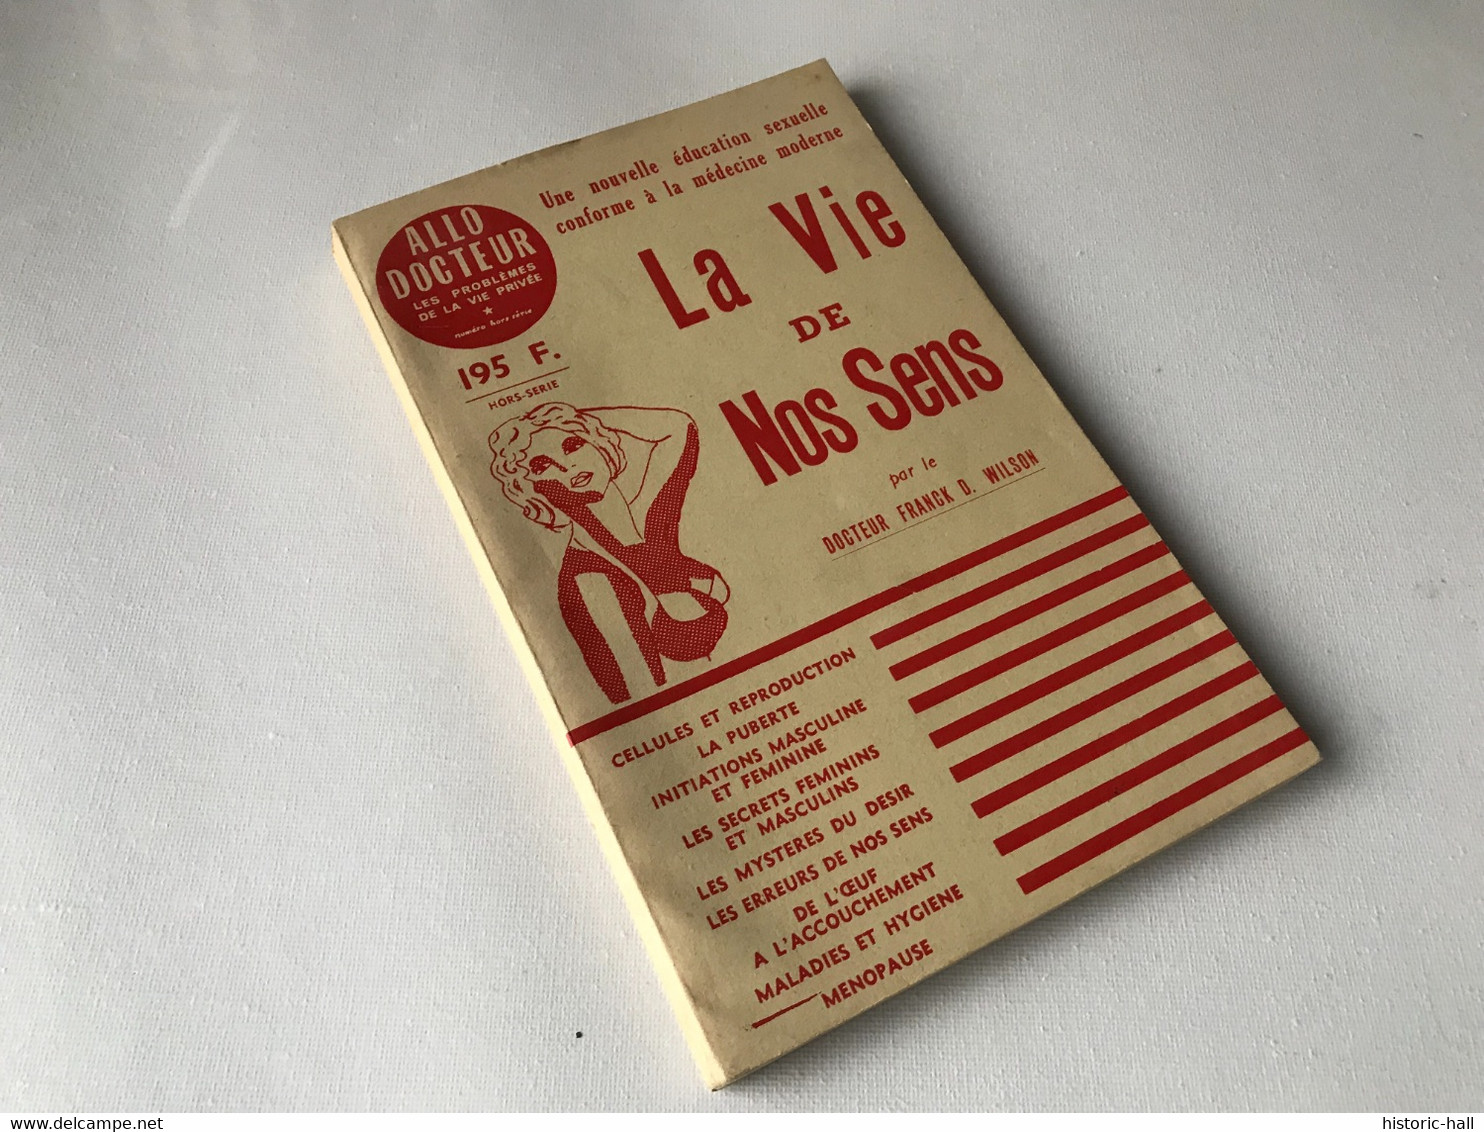 LA VIE DE NOS SENS - Nouvelle éducation Sexuelle - 1956 - Dr. Franck D. WILSON - Medicina & Salute